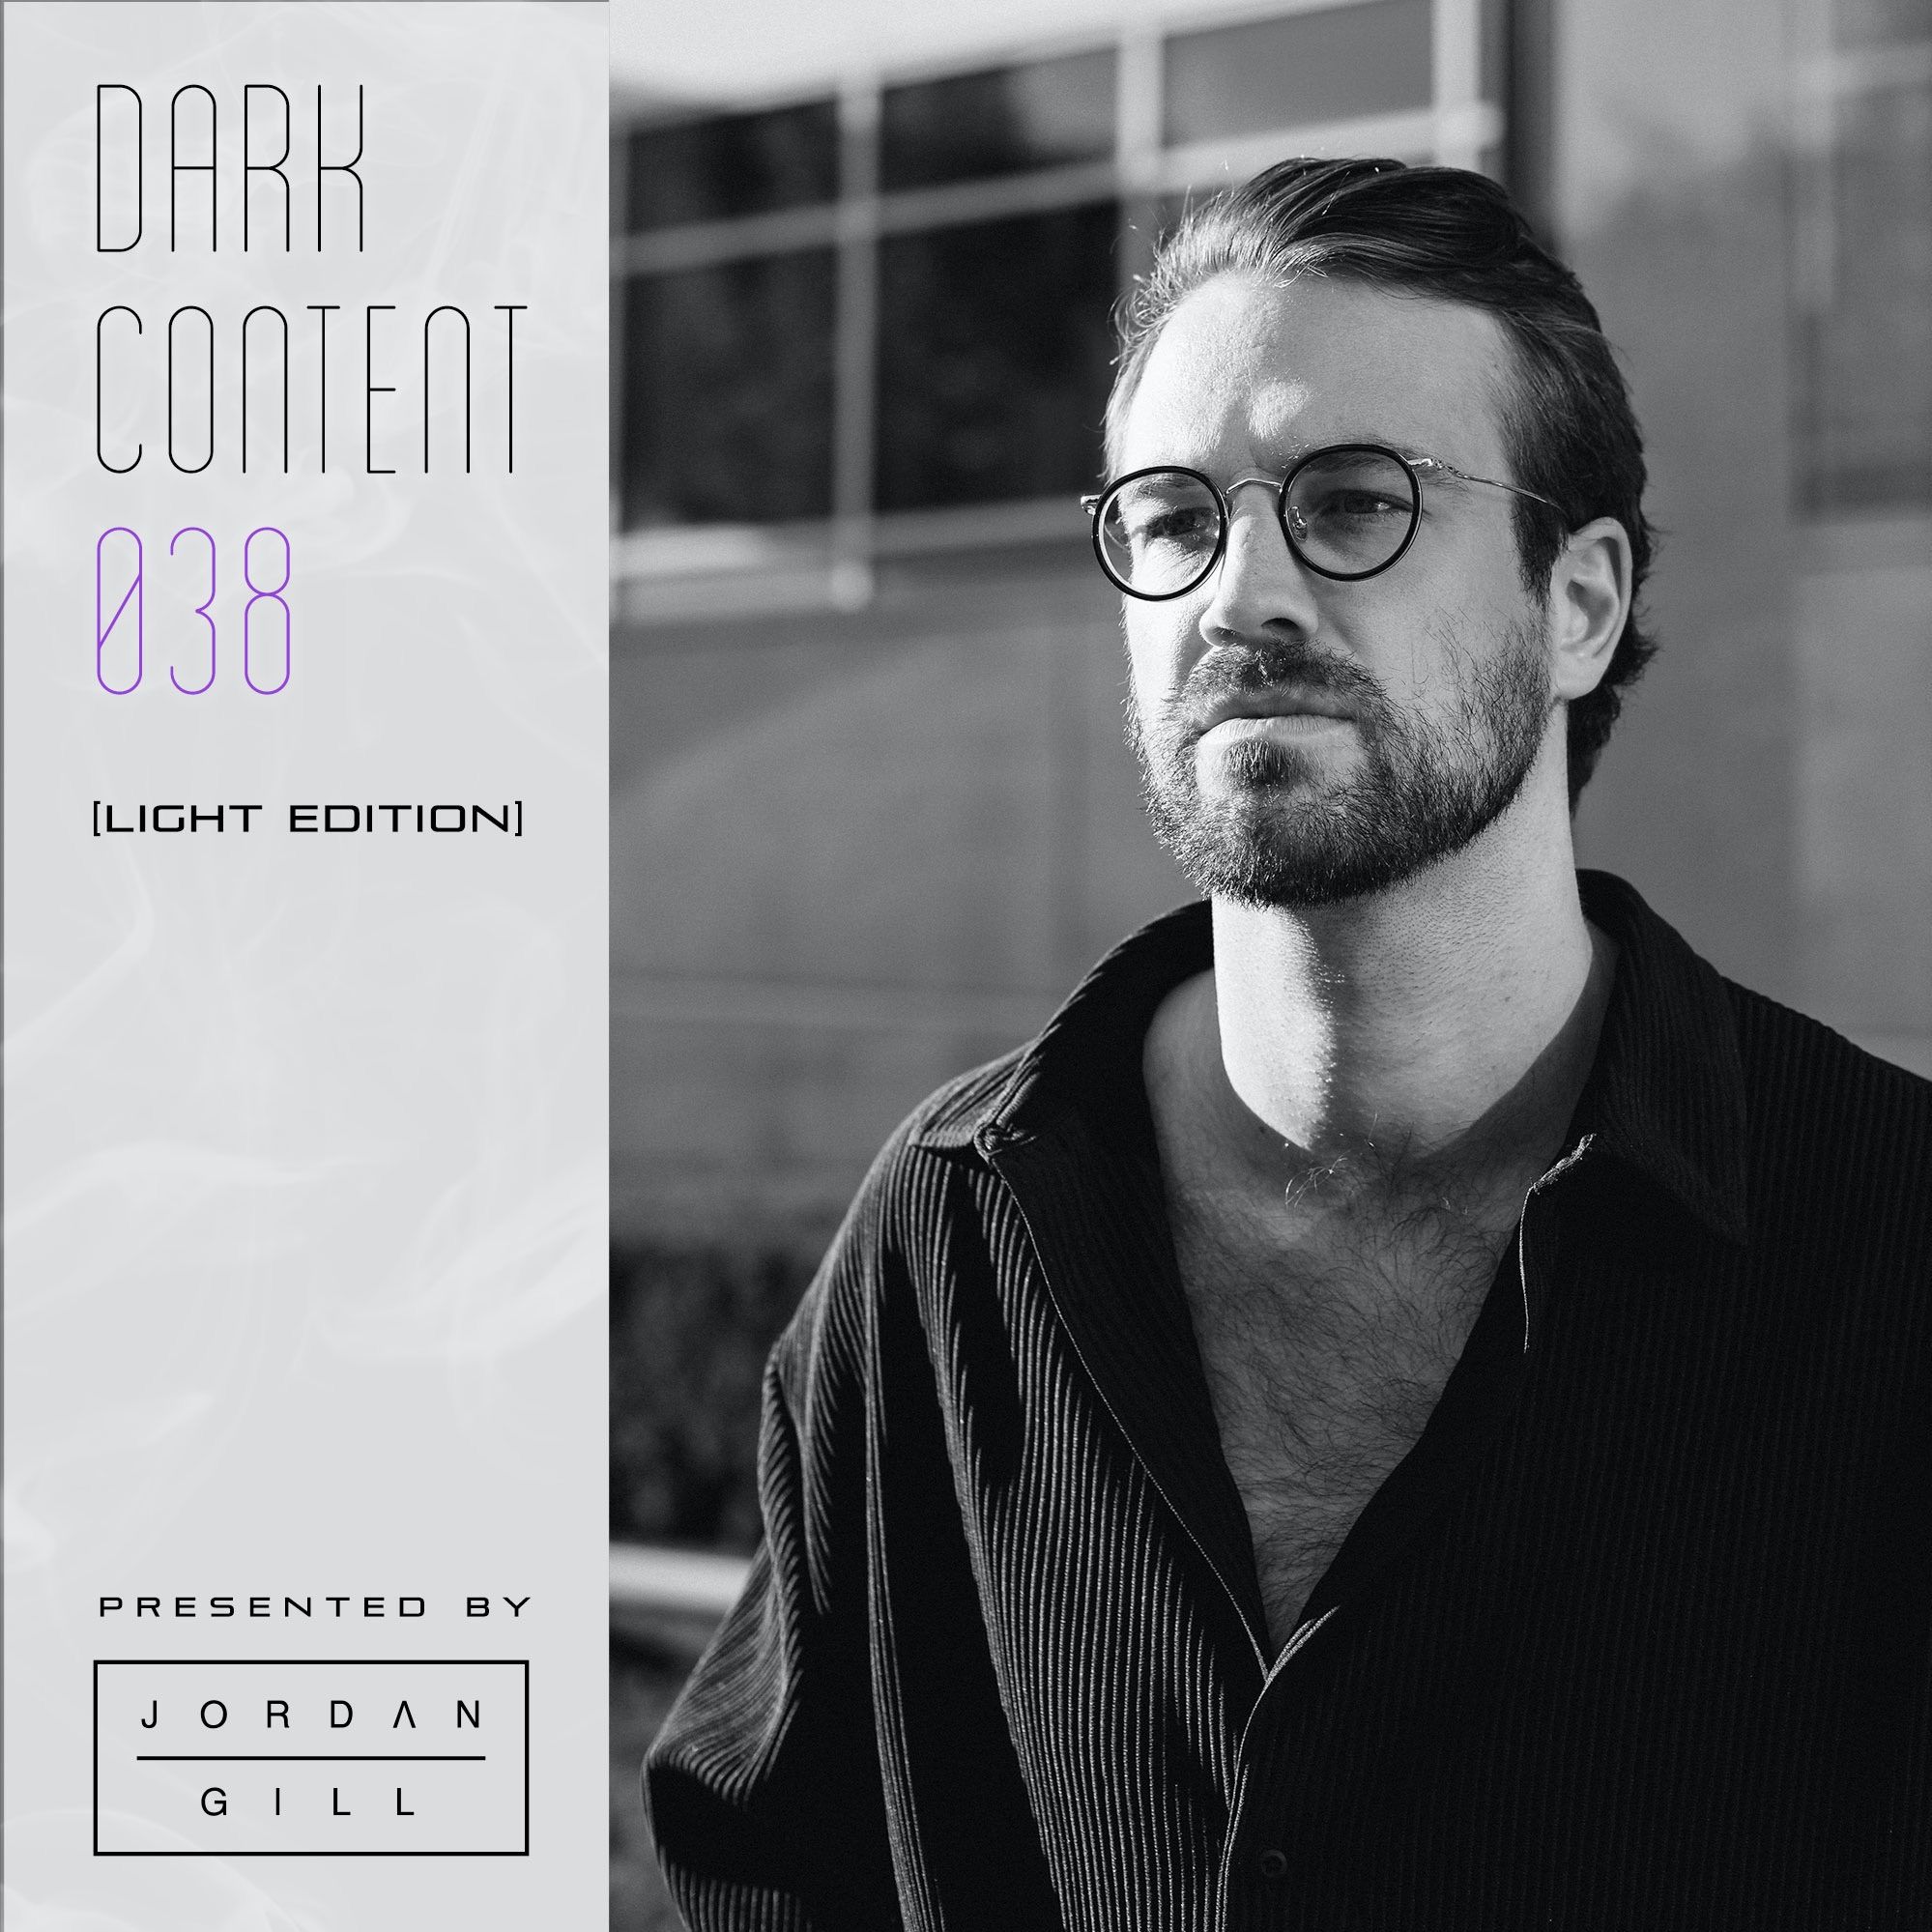 Stažení Dark Content 038 [Light Edition]